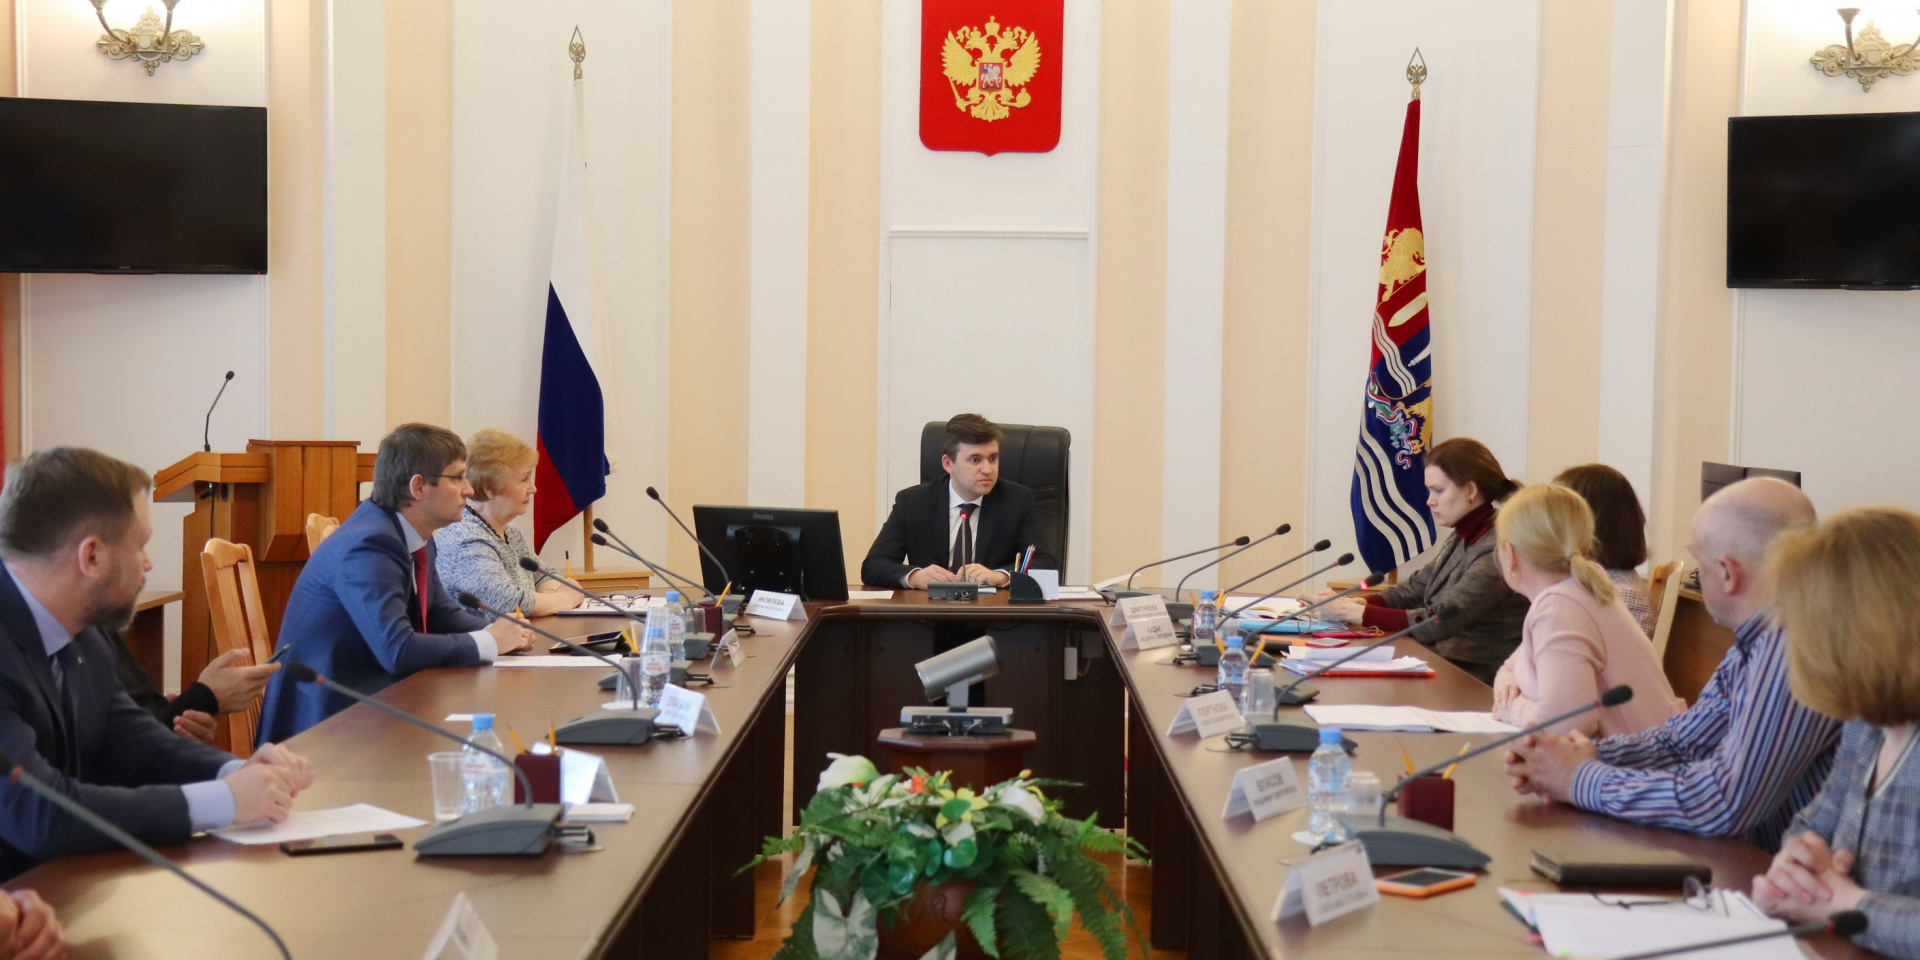 Станислав Воскресенский обсудил с предпринимателями Ивановской области меры поддержки в связи с распространением коронавируса